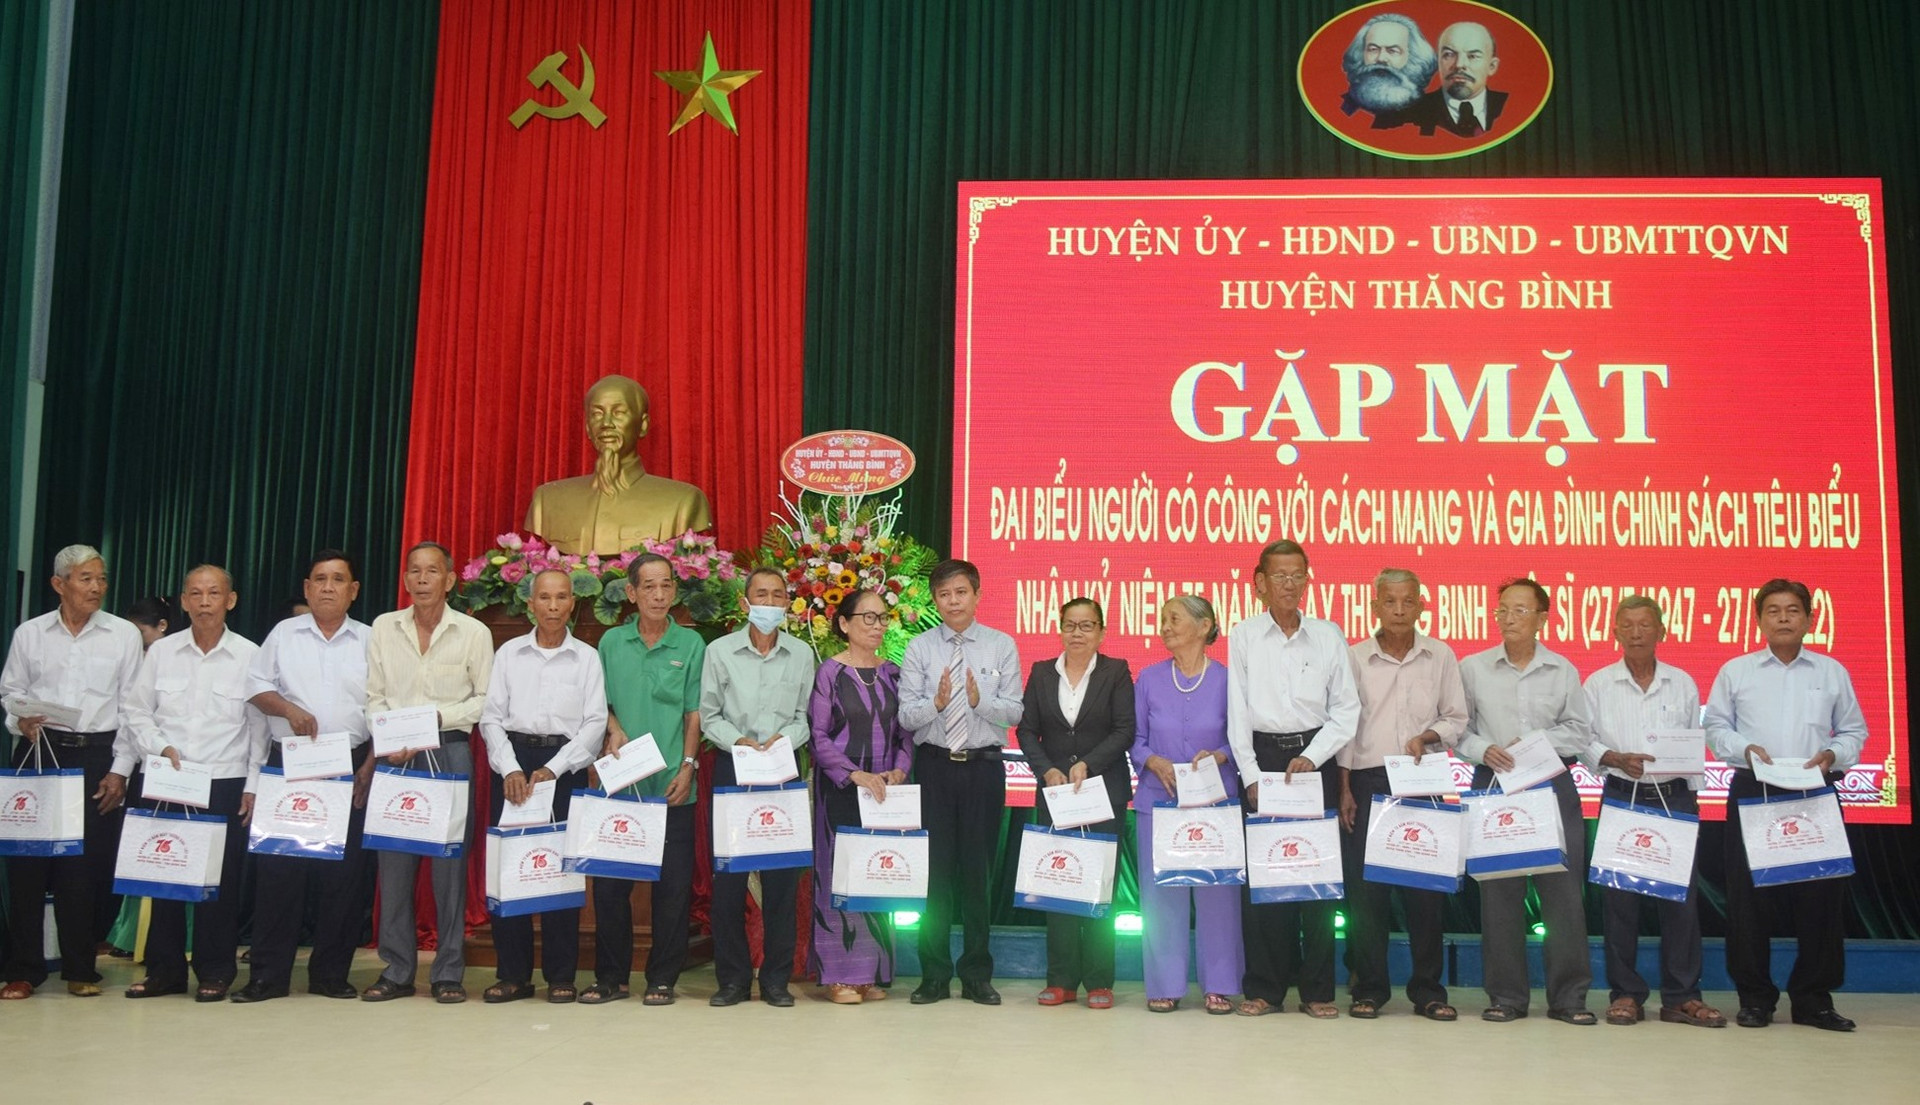 Chủ tịch UBND huyện Thăng Bình Võ Văn Hùng tặng quà cho gia đình chính sách, người có công tiêu biểu